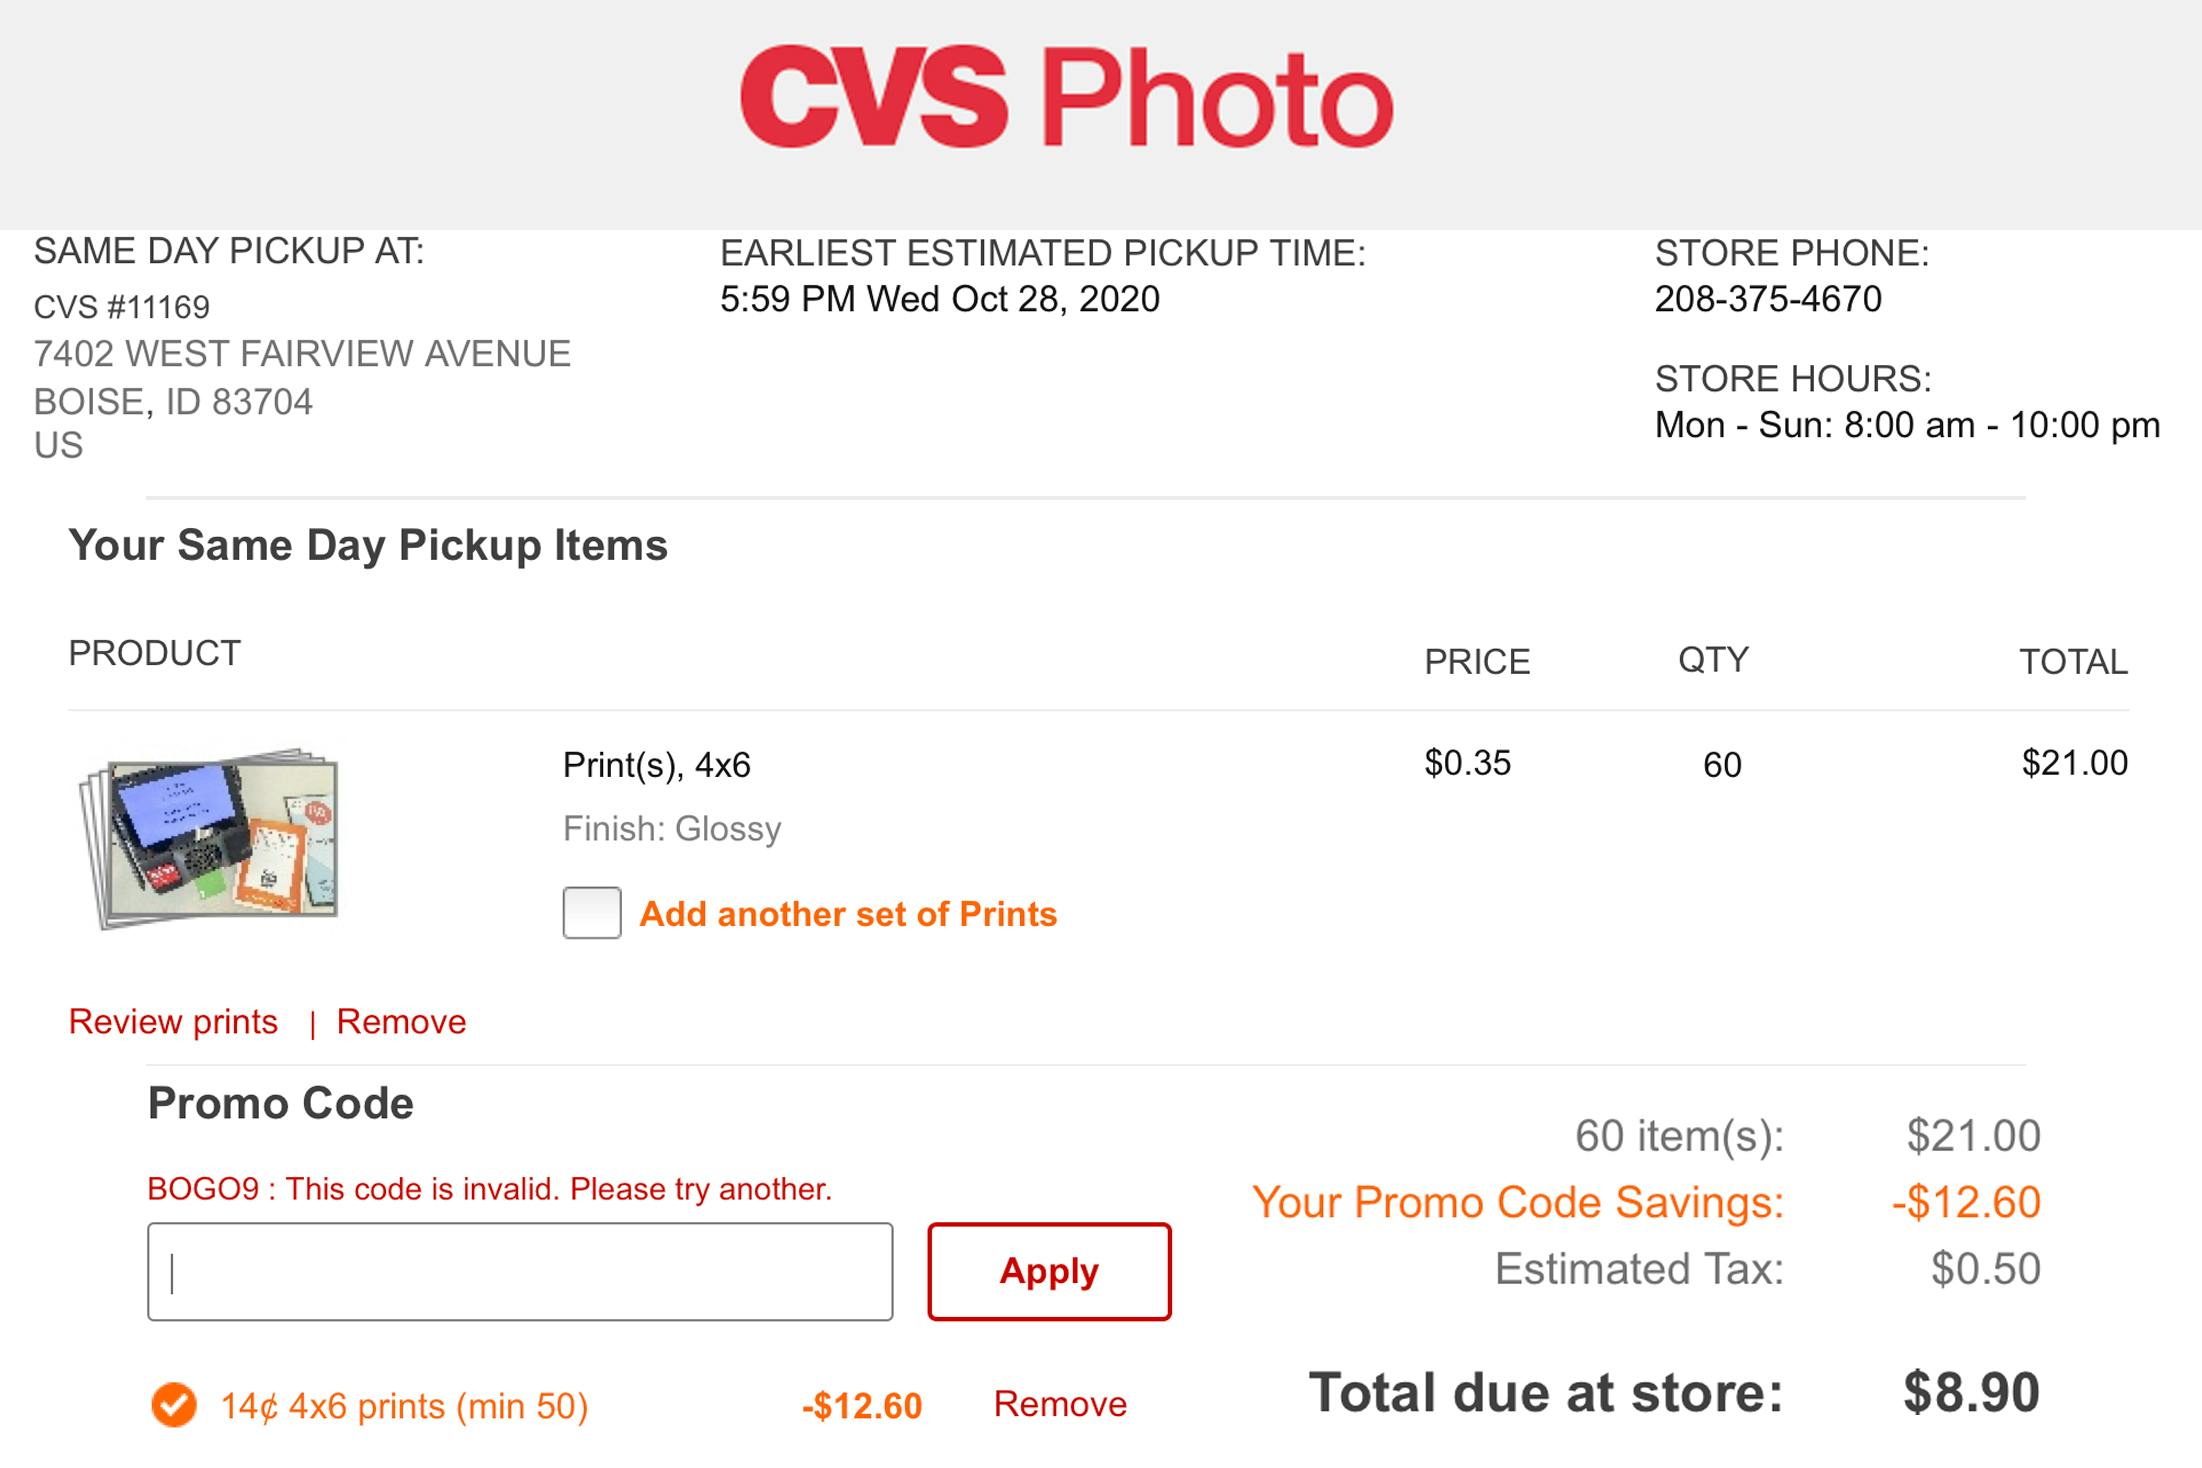 cvs passport photo print coupon